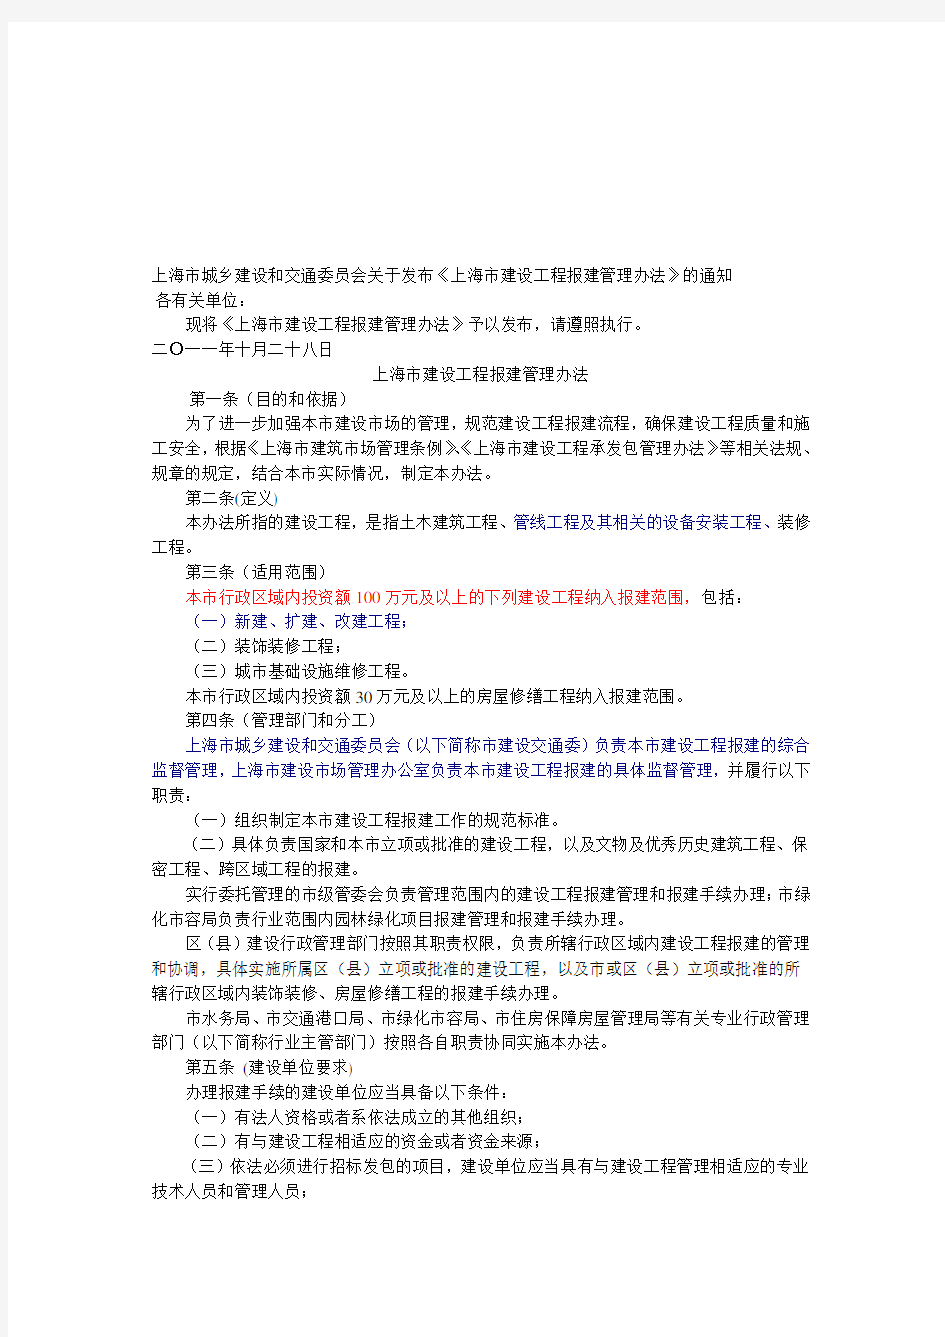 【2019年整理】上海市建设工程报建管理办法